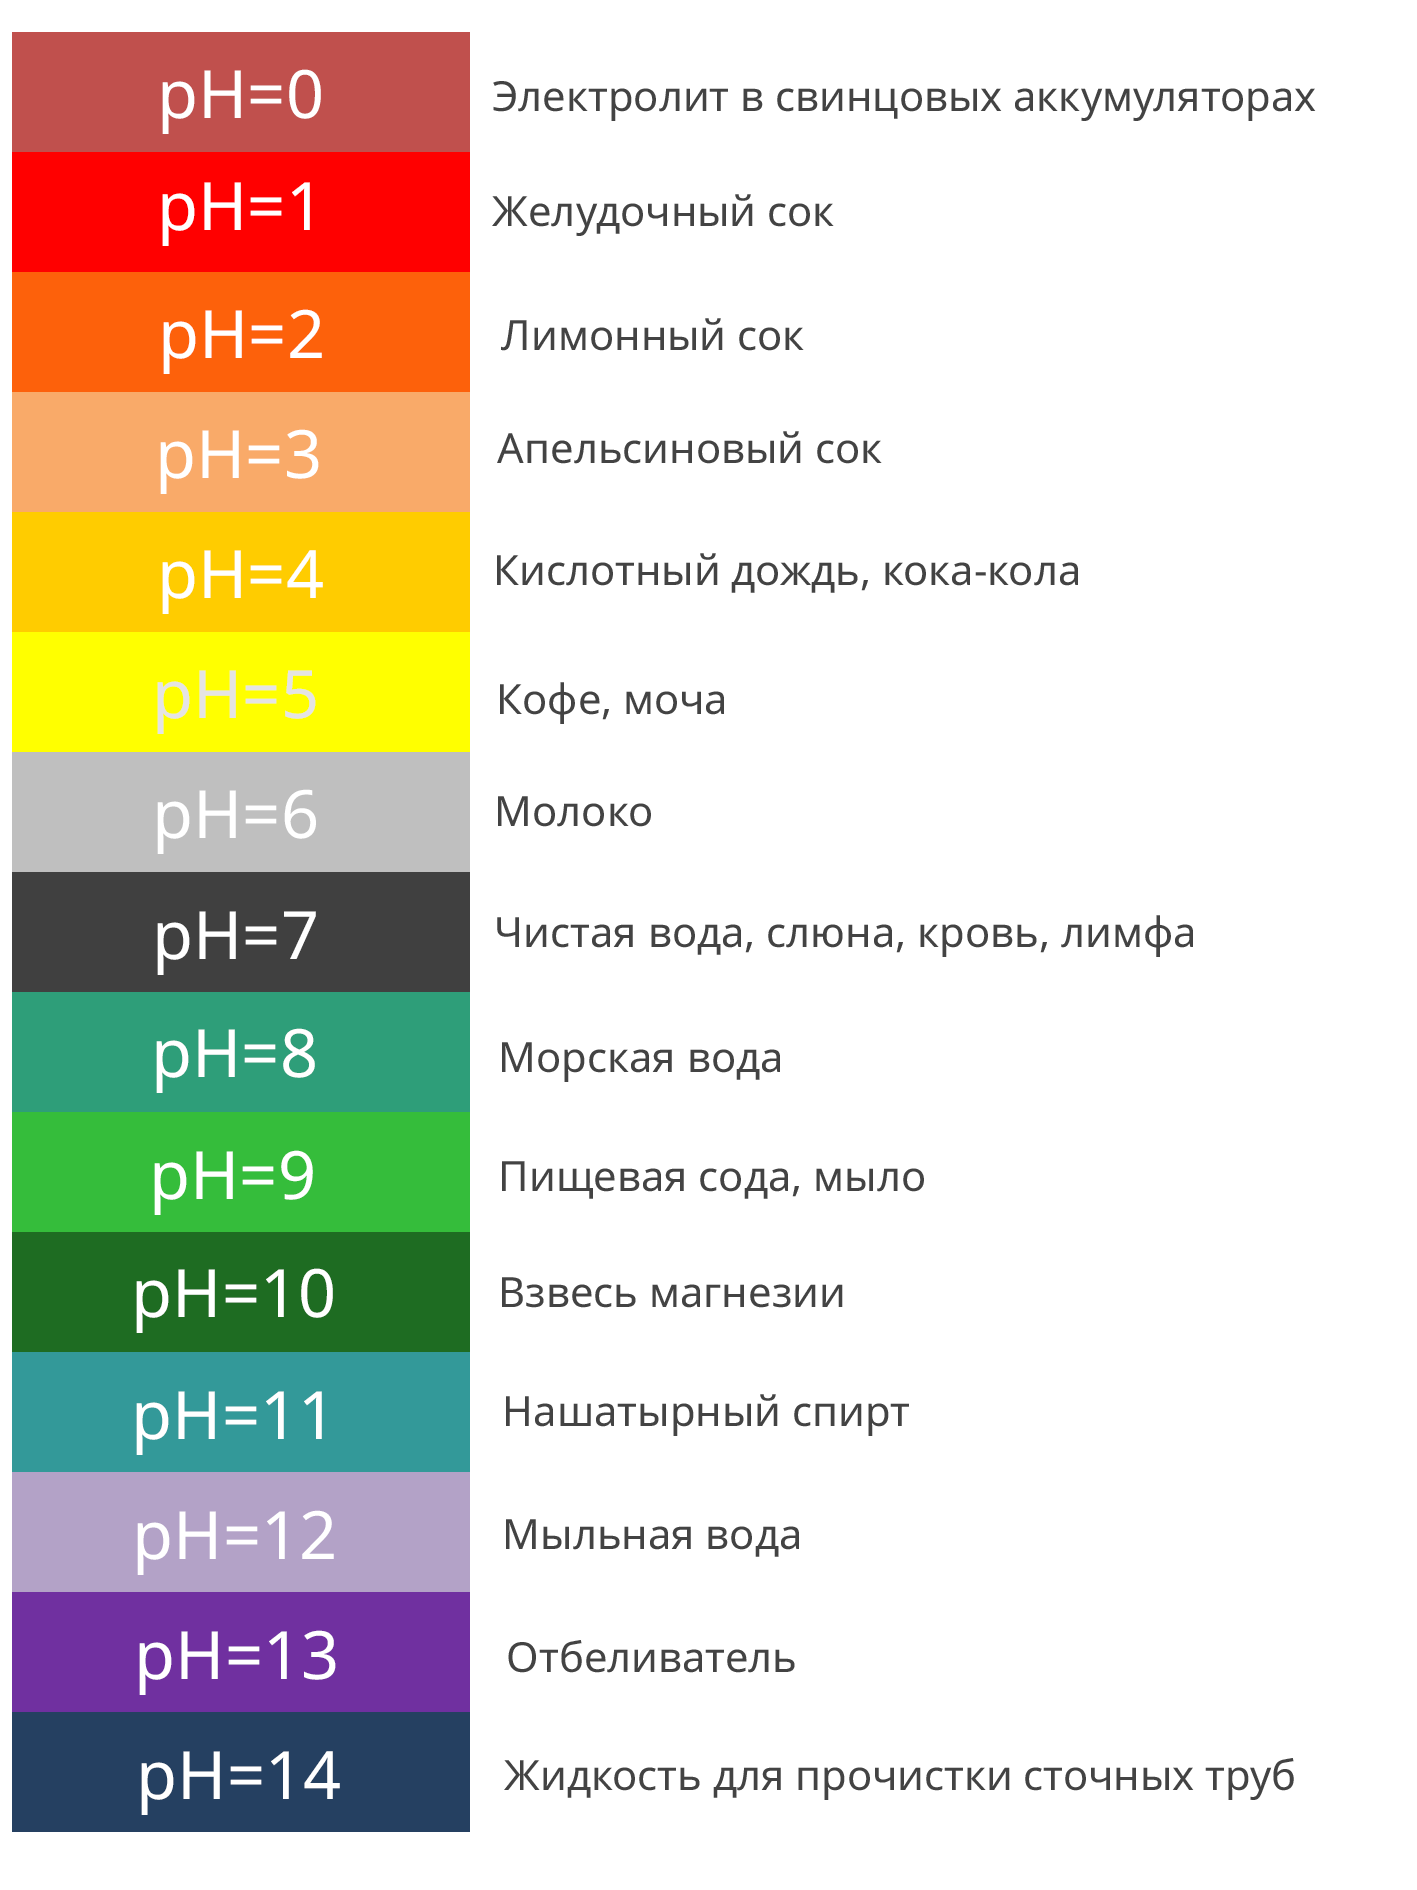 Что такое pH и зачем его измерять?